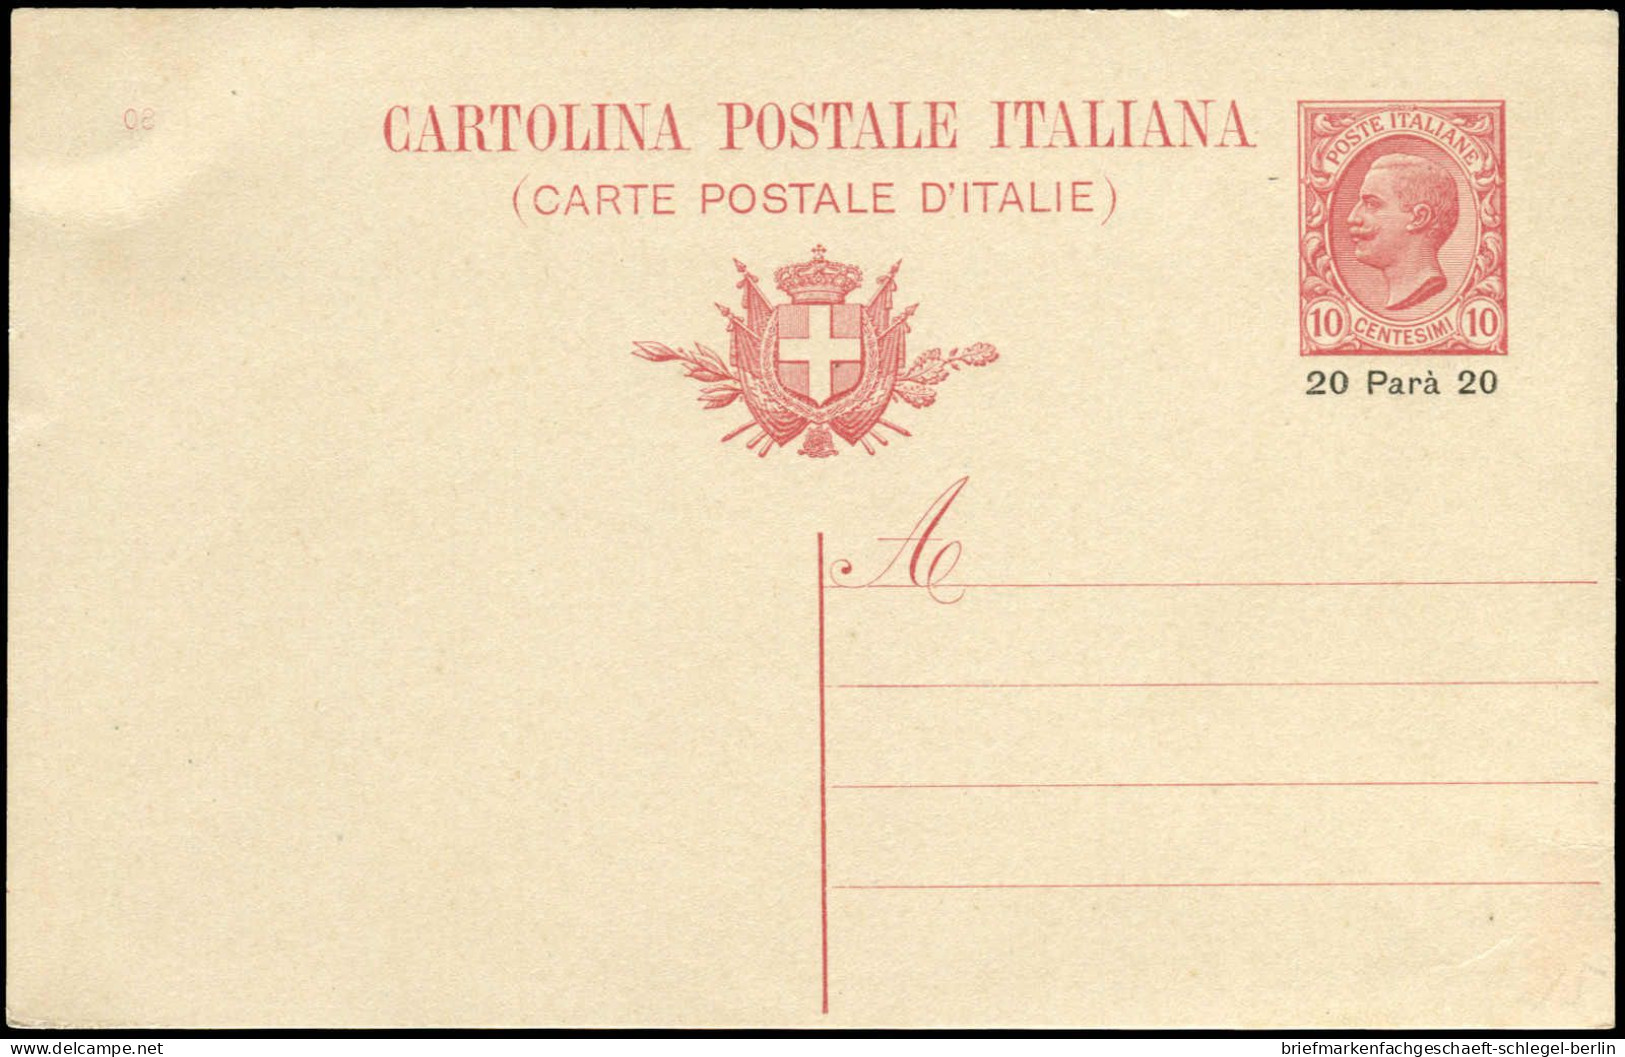 Italienische Post in der Levante, Brief